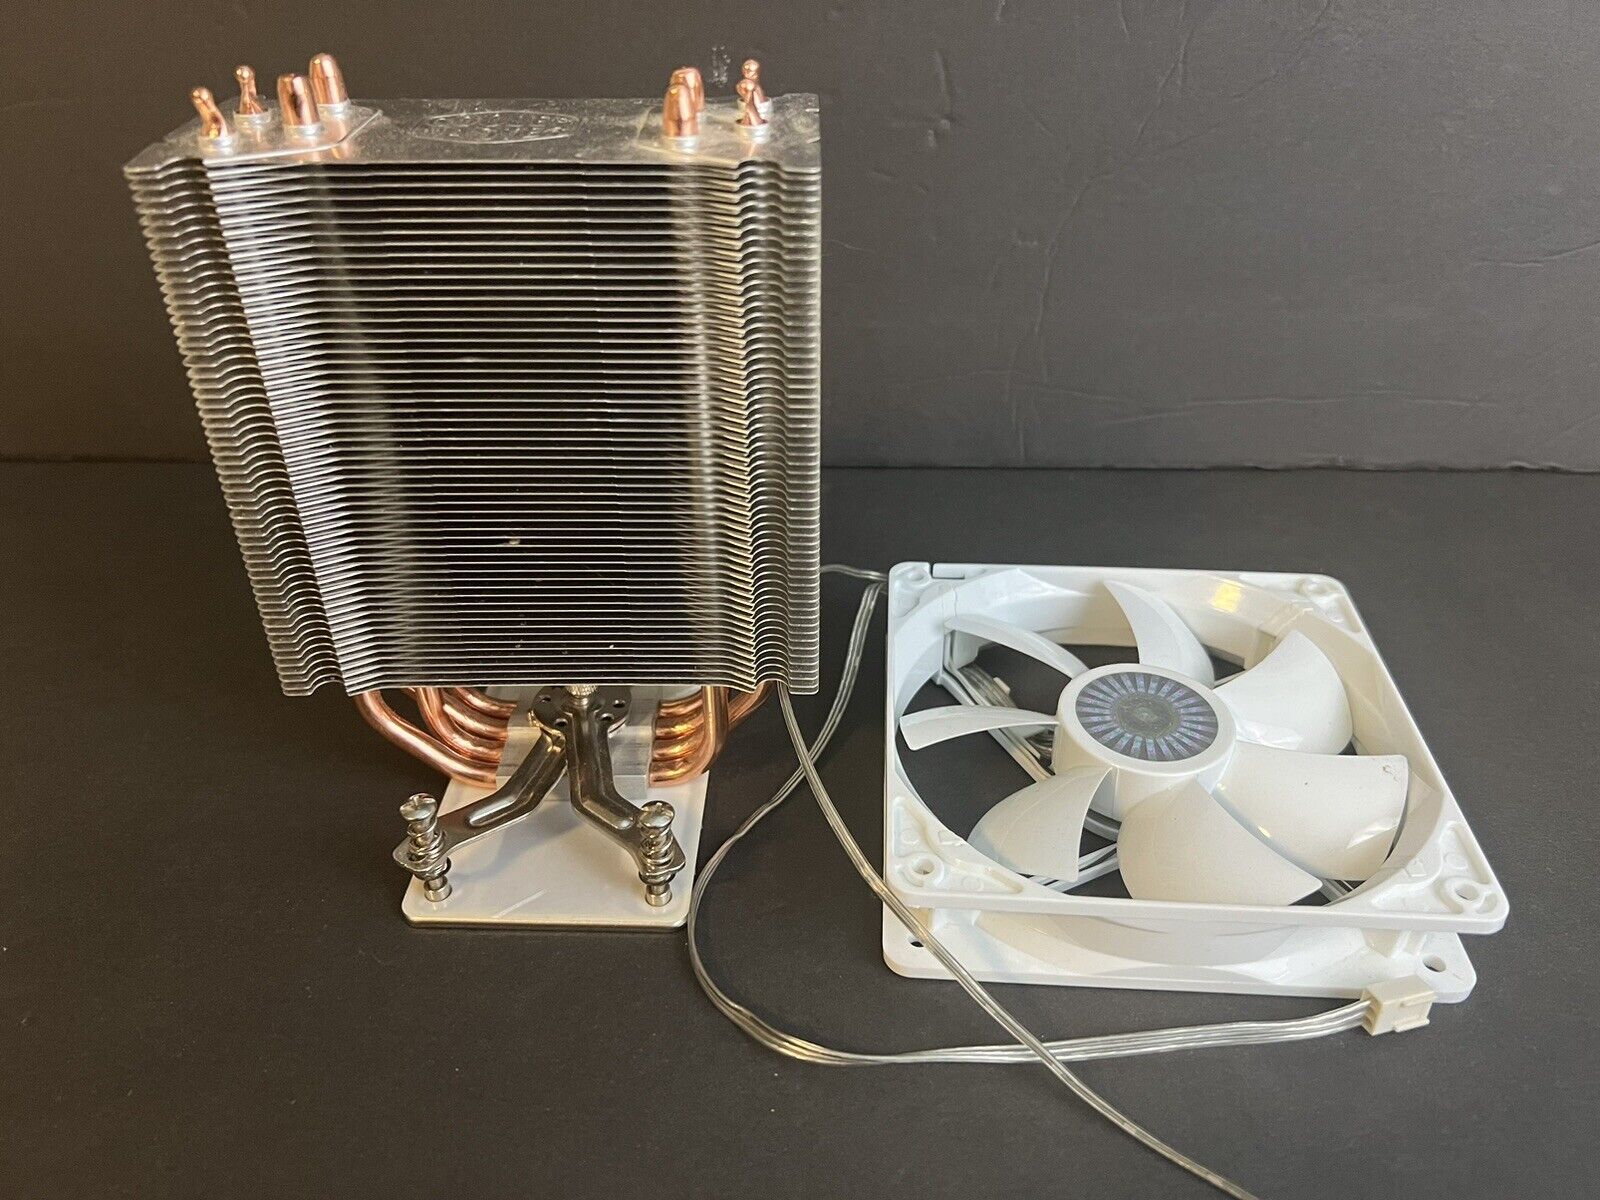 Cooler Master CPU Cooler, Cooling Tower Heatsink + Fan + AM3 Backplate